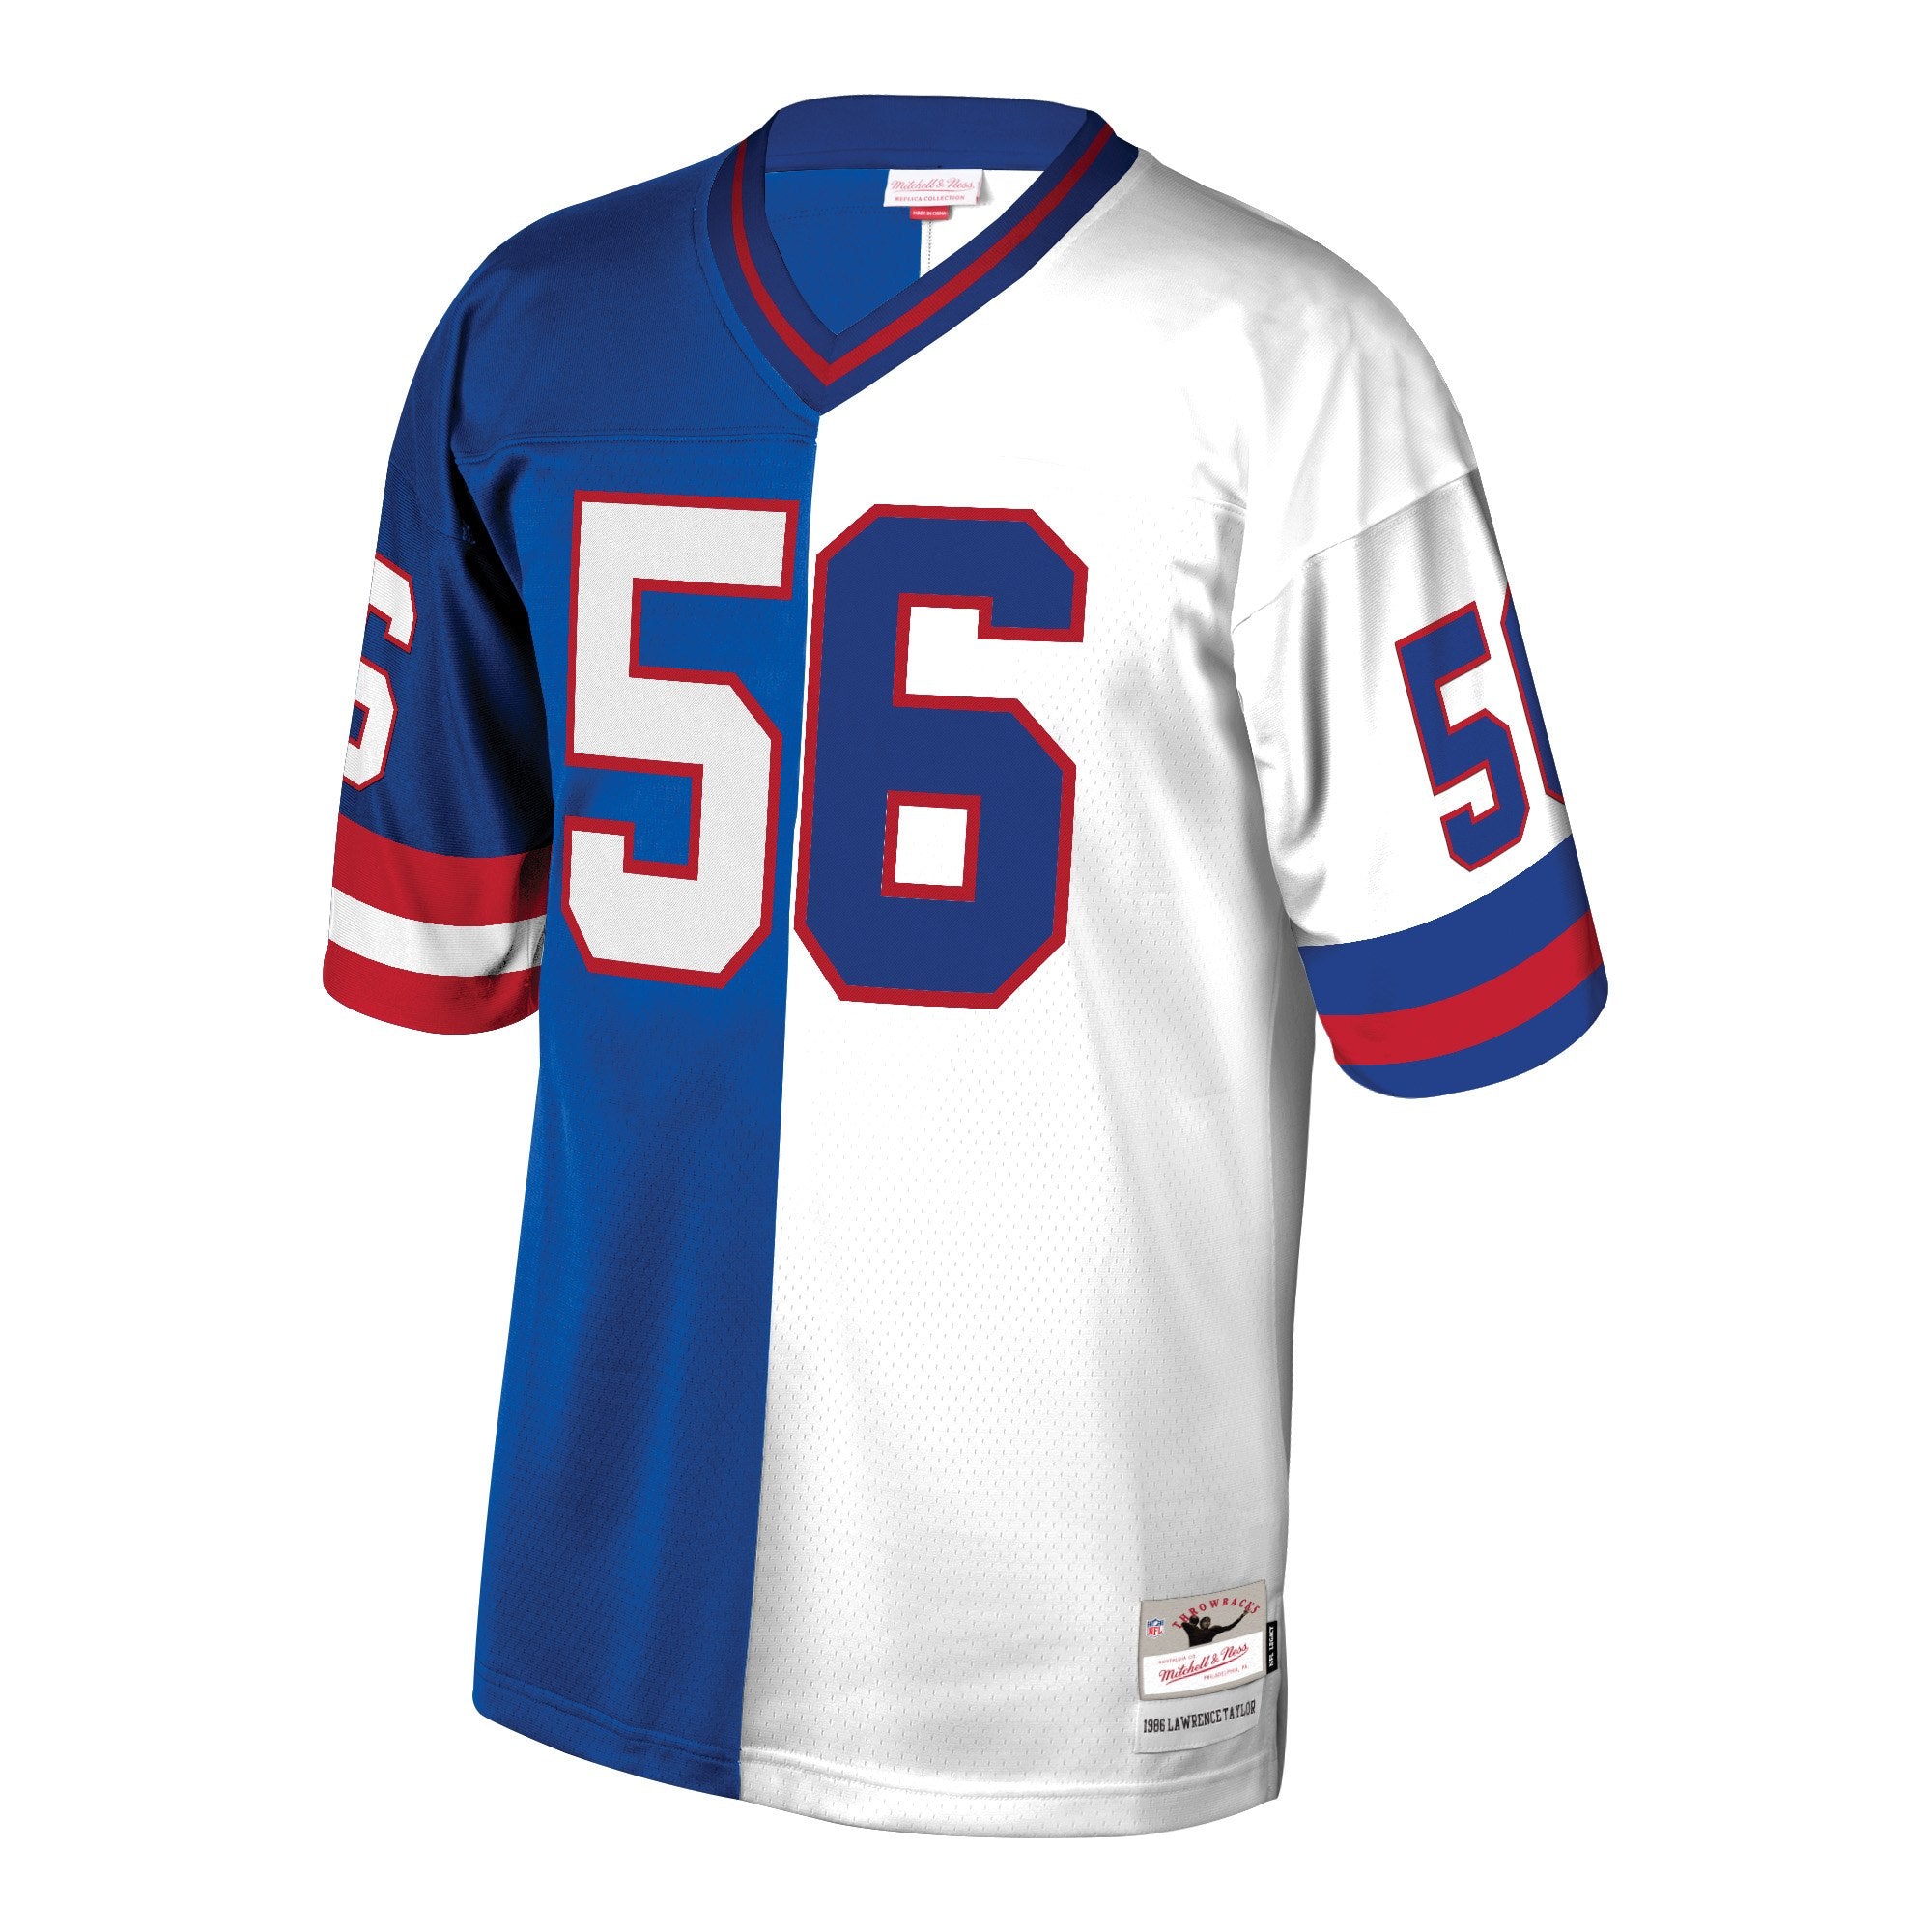 New York Giants Custom White Men's Nike Team Logo Dual Overlap Limited NFL Jersey